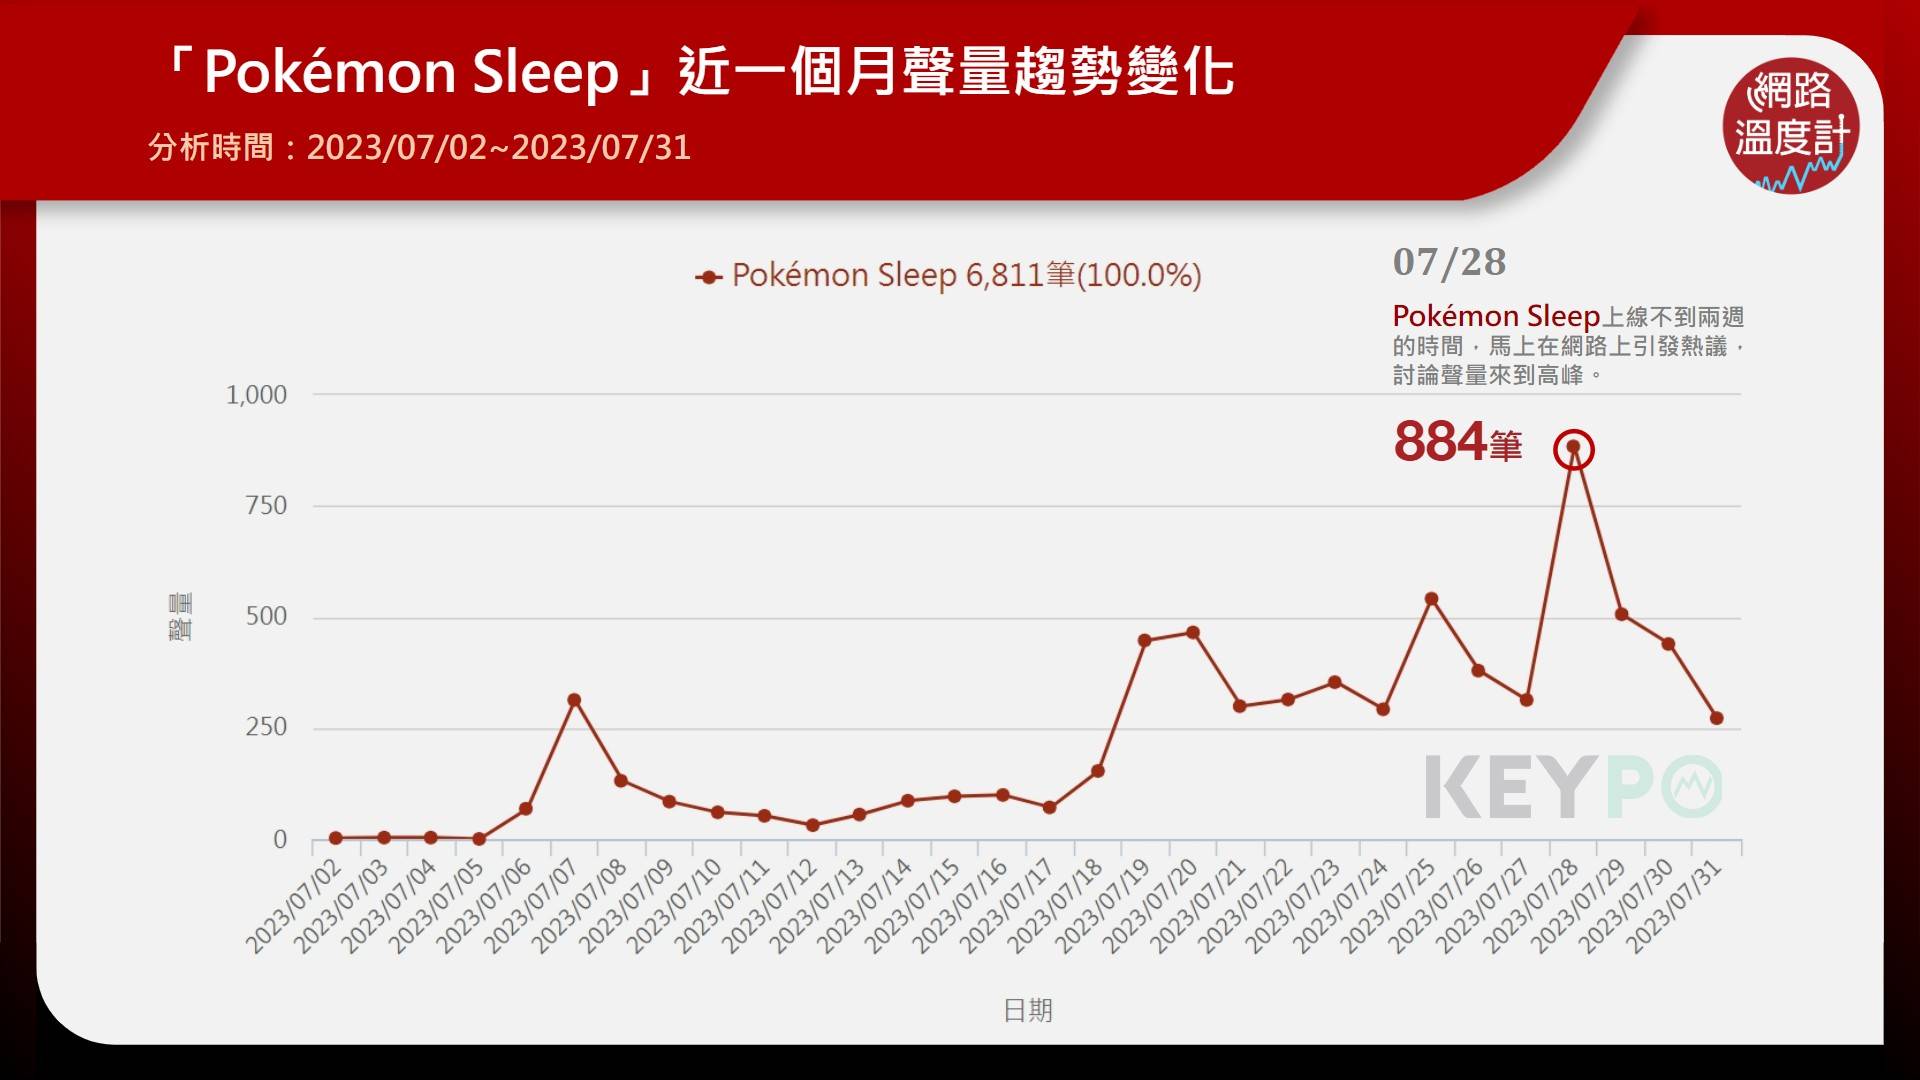 「Pokémon Sleep」近一個月聲量趨勢變化